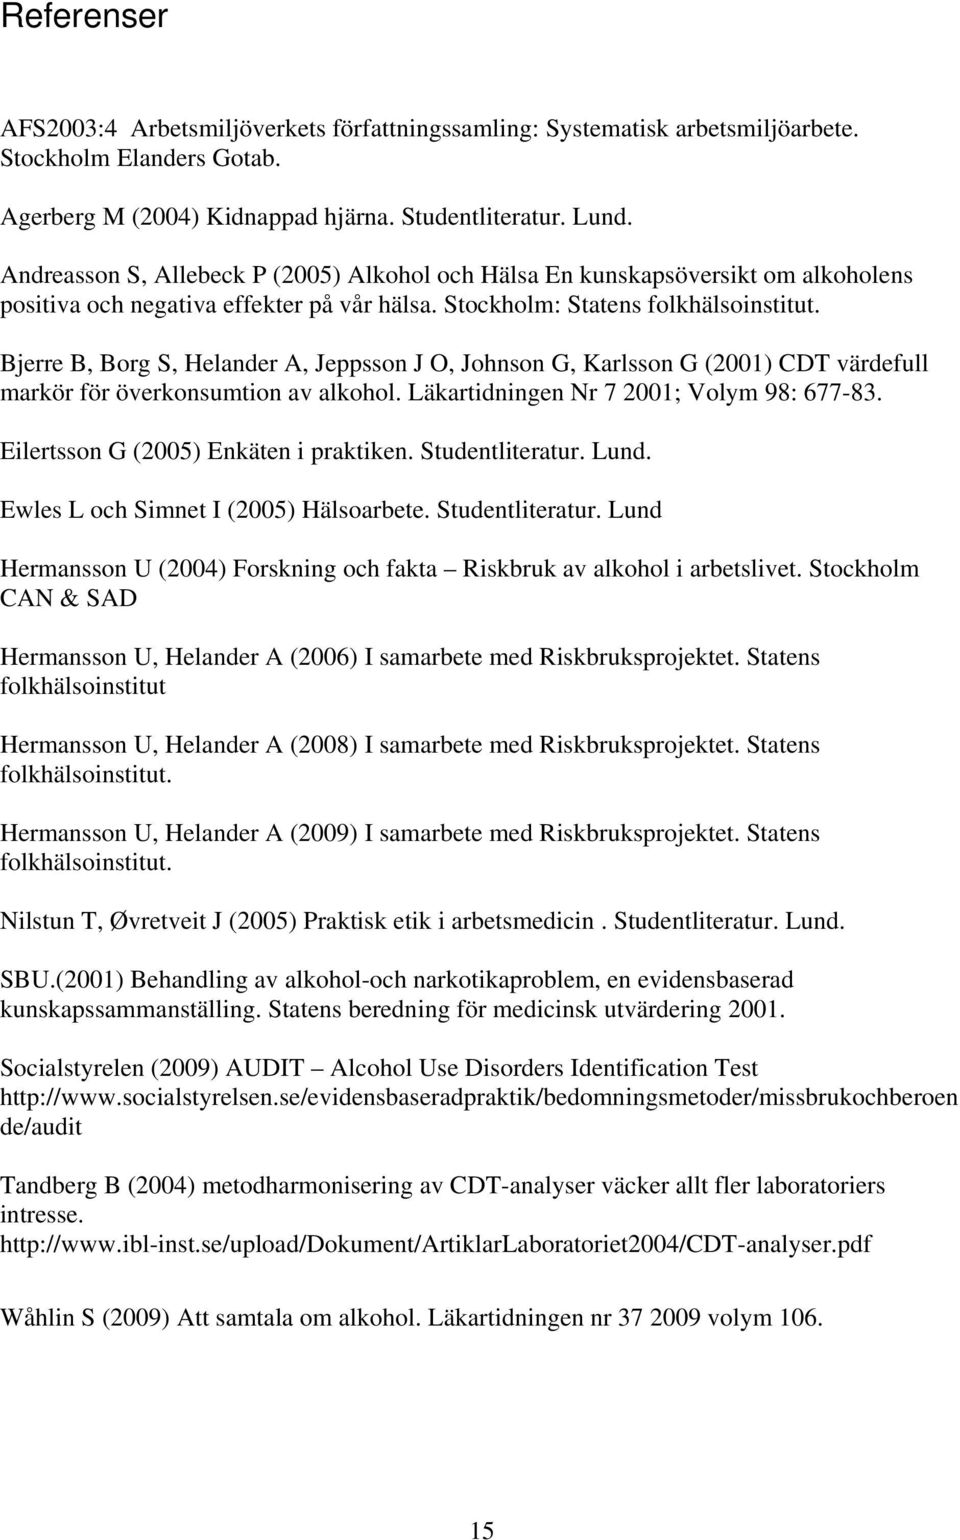 Bjerre B, Borg S, Helander A, Jeppsson J O, Johnson G, Karlsson G (2001) CDT värdefull markör för överkonsumtion av alkohol. Läkartidningen Nr 7 2001; Volym 98: 677-83.